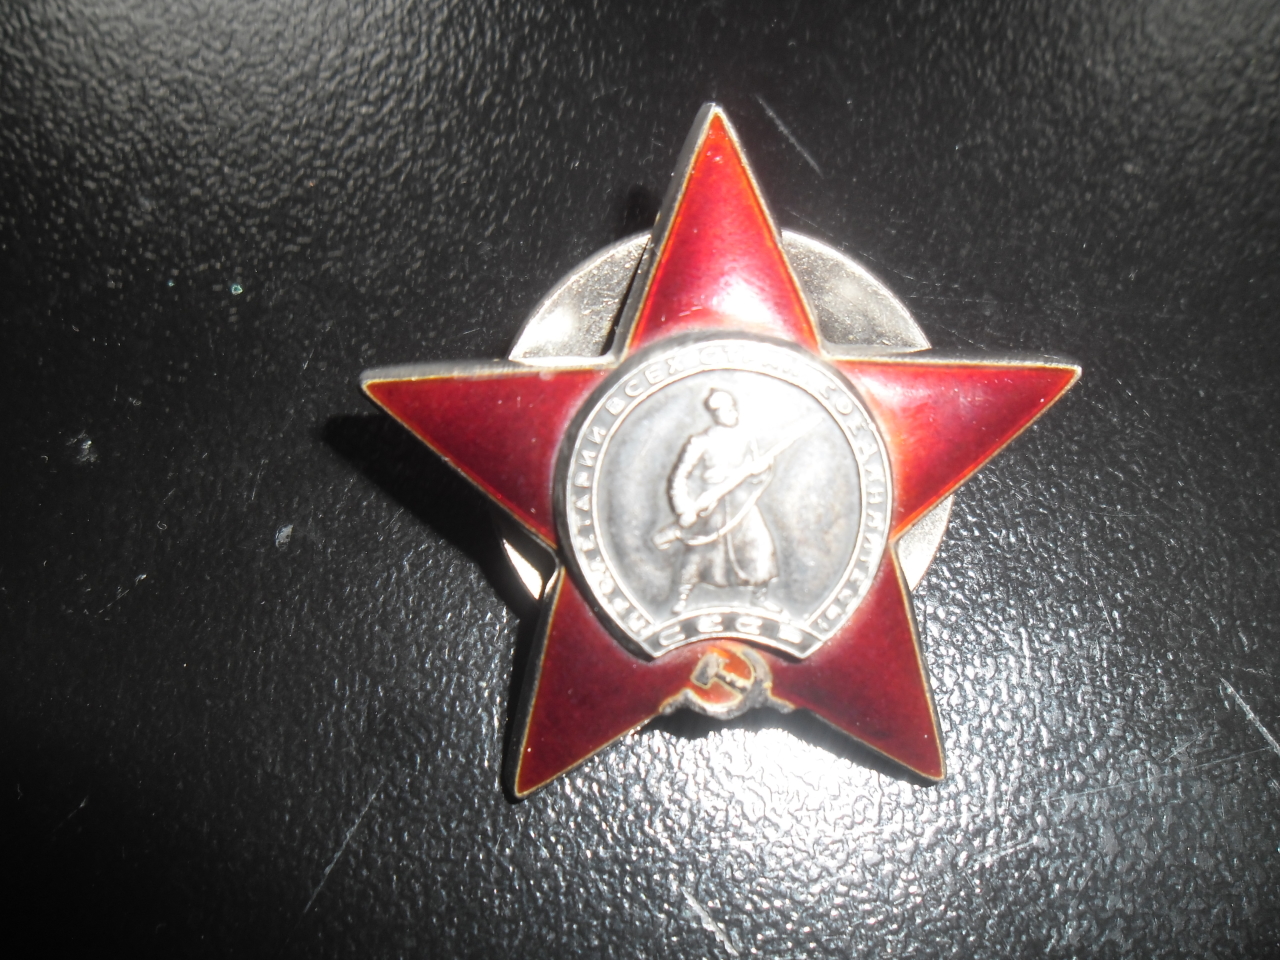 Շքանշան՝ Հովհաննես Գեղամի Գրիգորյանի (Հայրենական պատերազմի մասնակից)